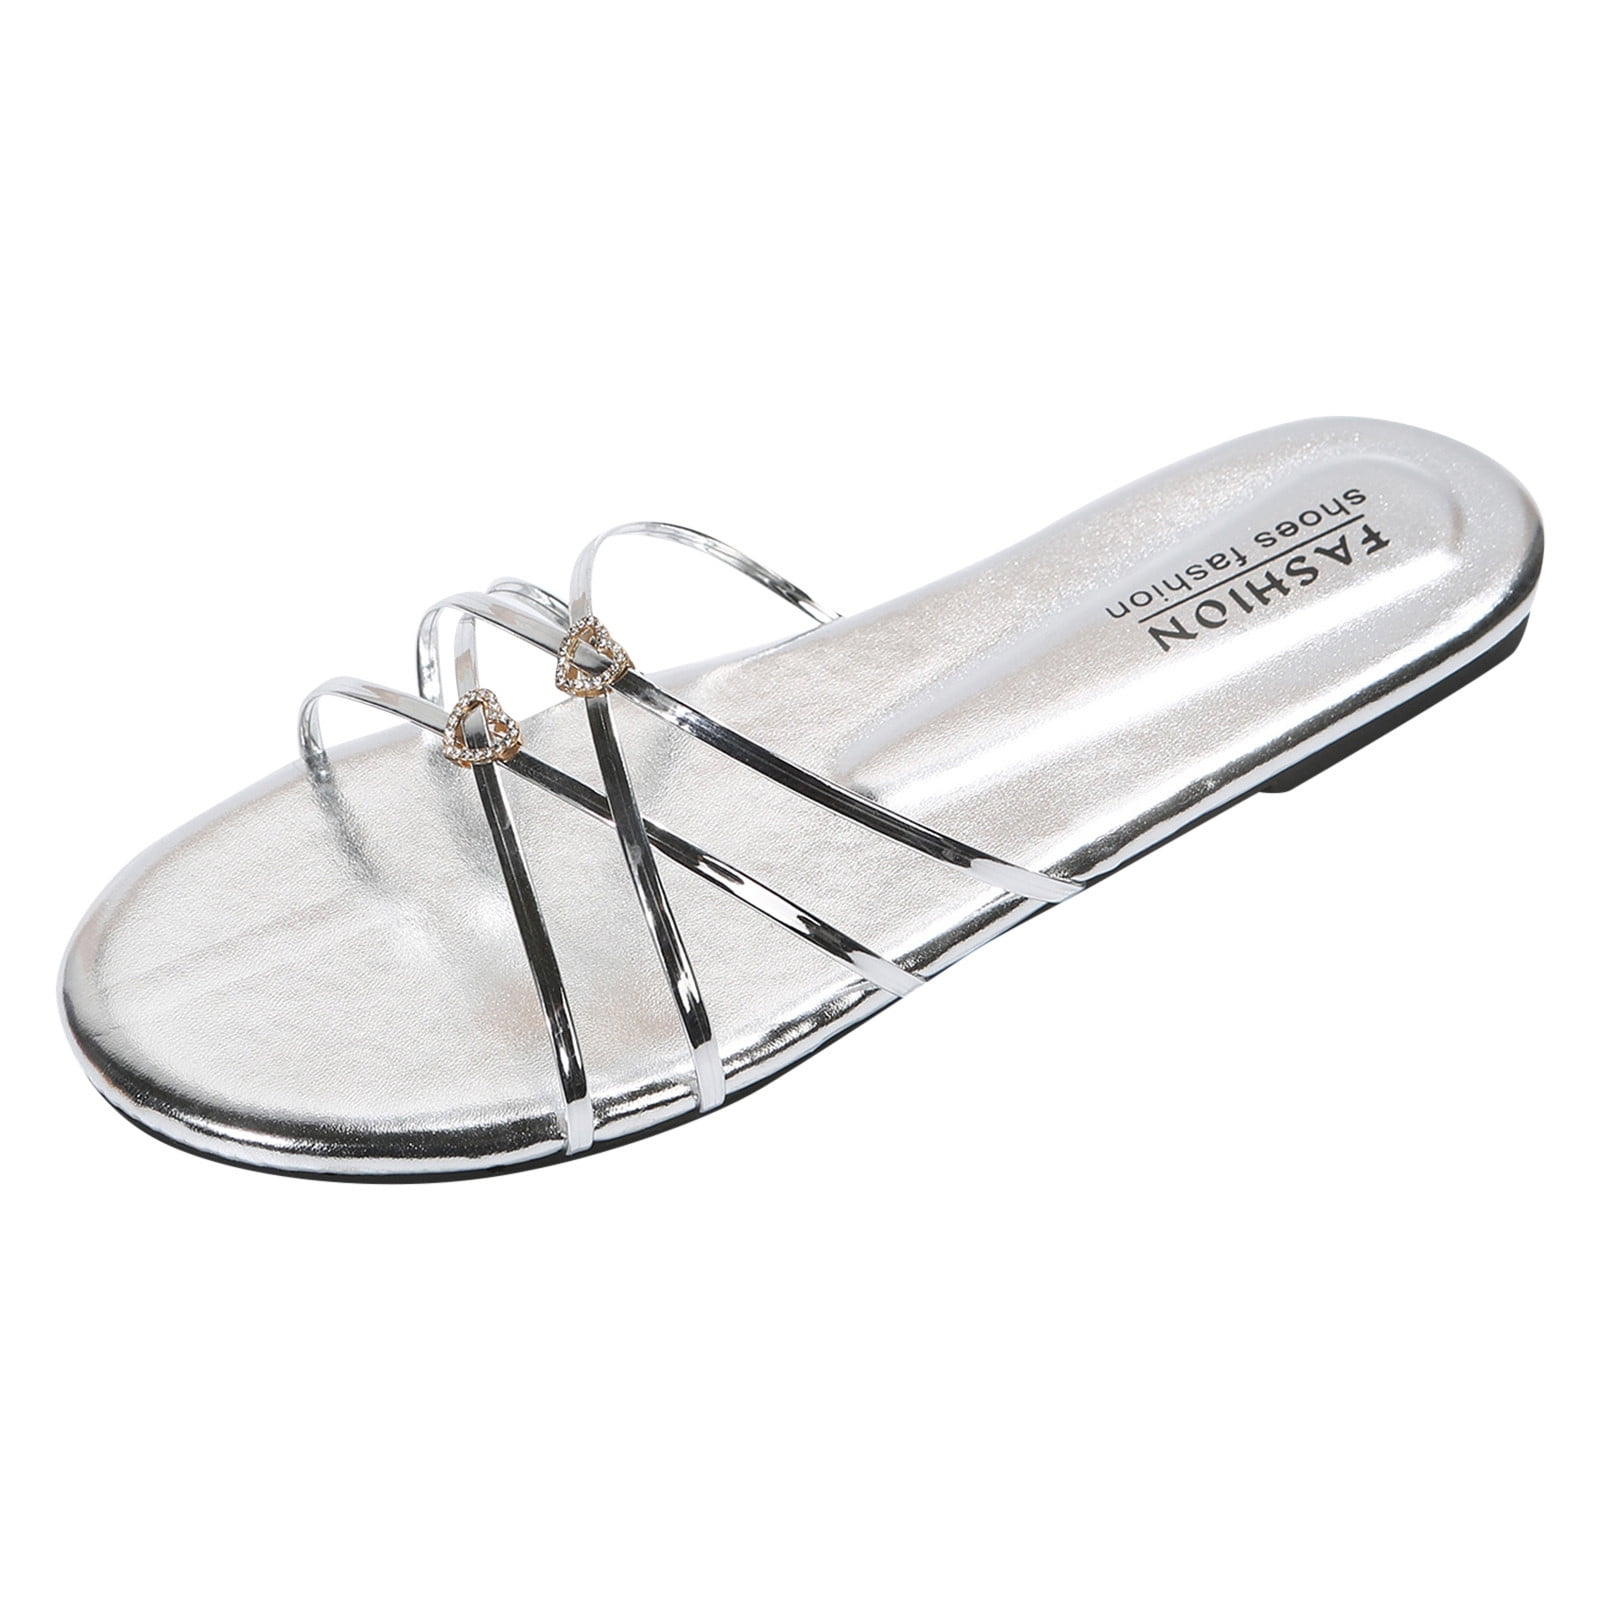 WILLBEST Slippers for Women Indoor Women Sandals Summer Fashion New ...